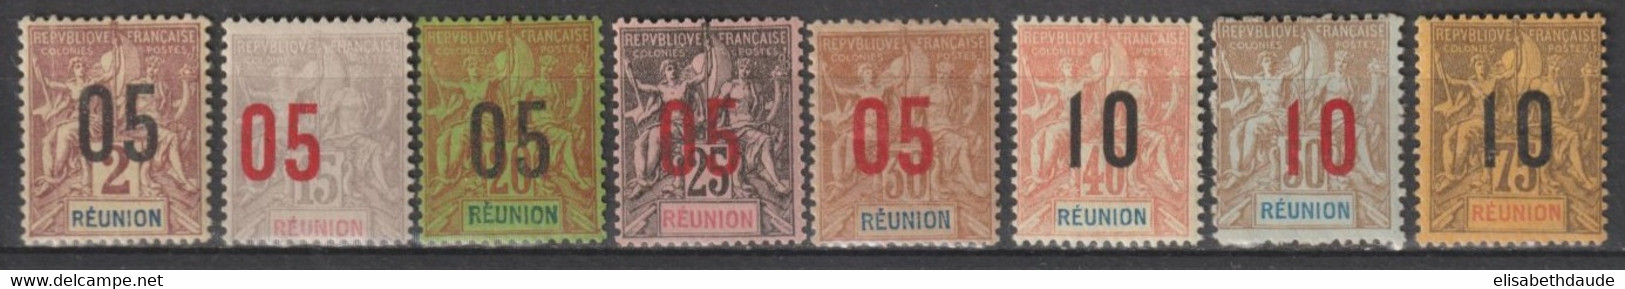 REUNION - 1912 - SERIE COMPLETE - YVERT N° 72/79 * MH (BELLE VARIETE DENTELURE DU 78 !) - COTE = 30+ EUR. - - Nuovi